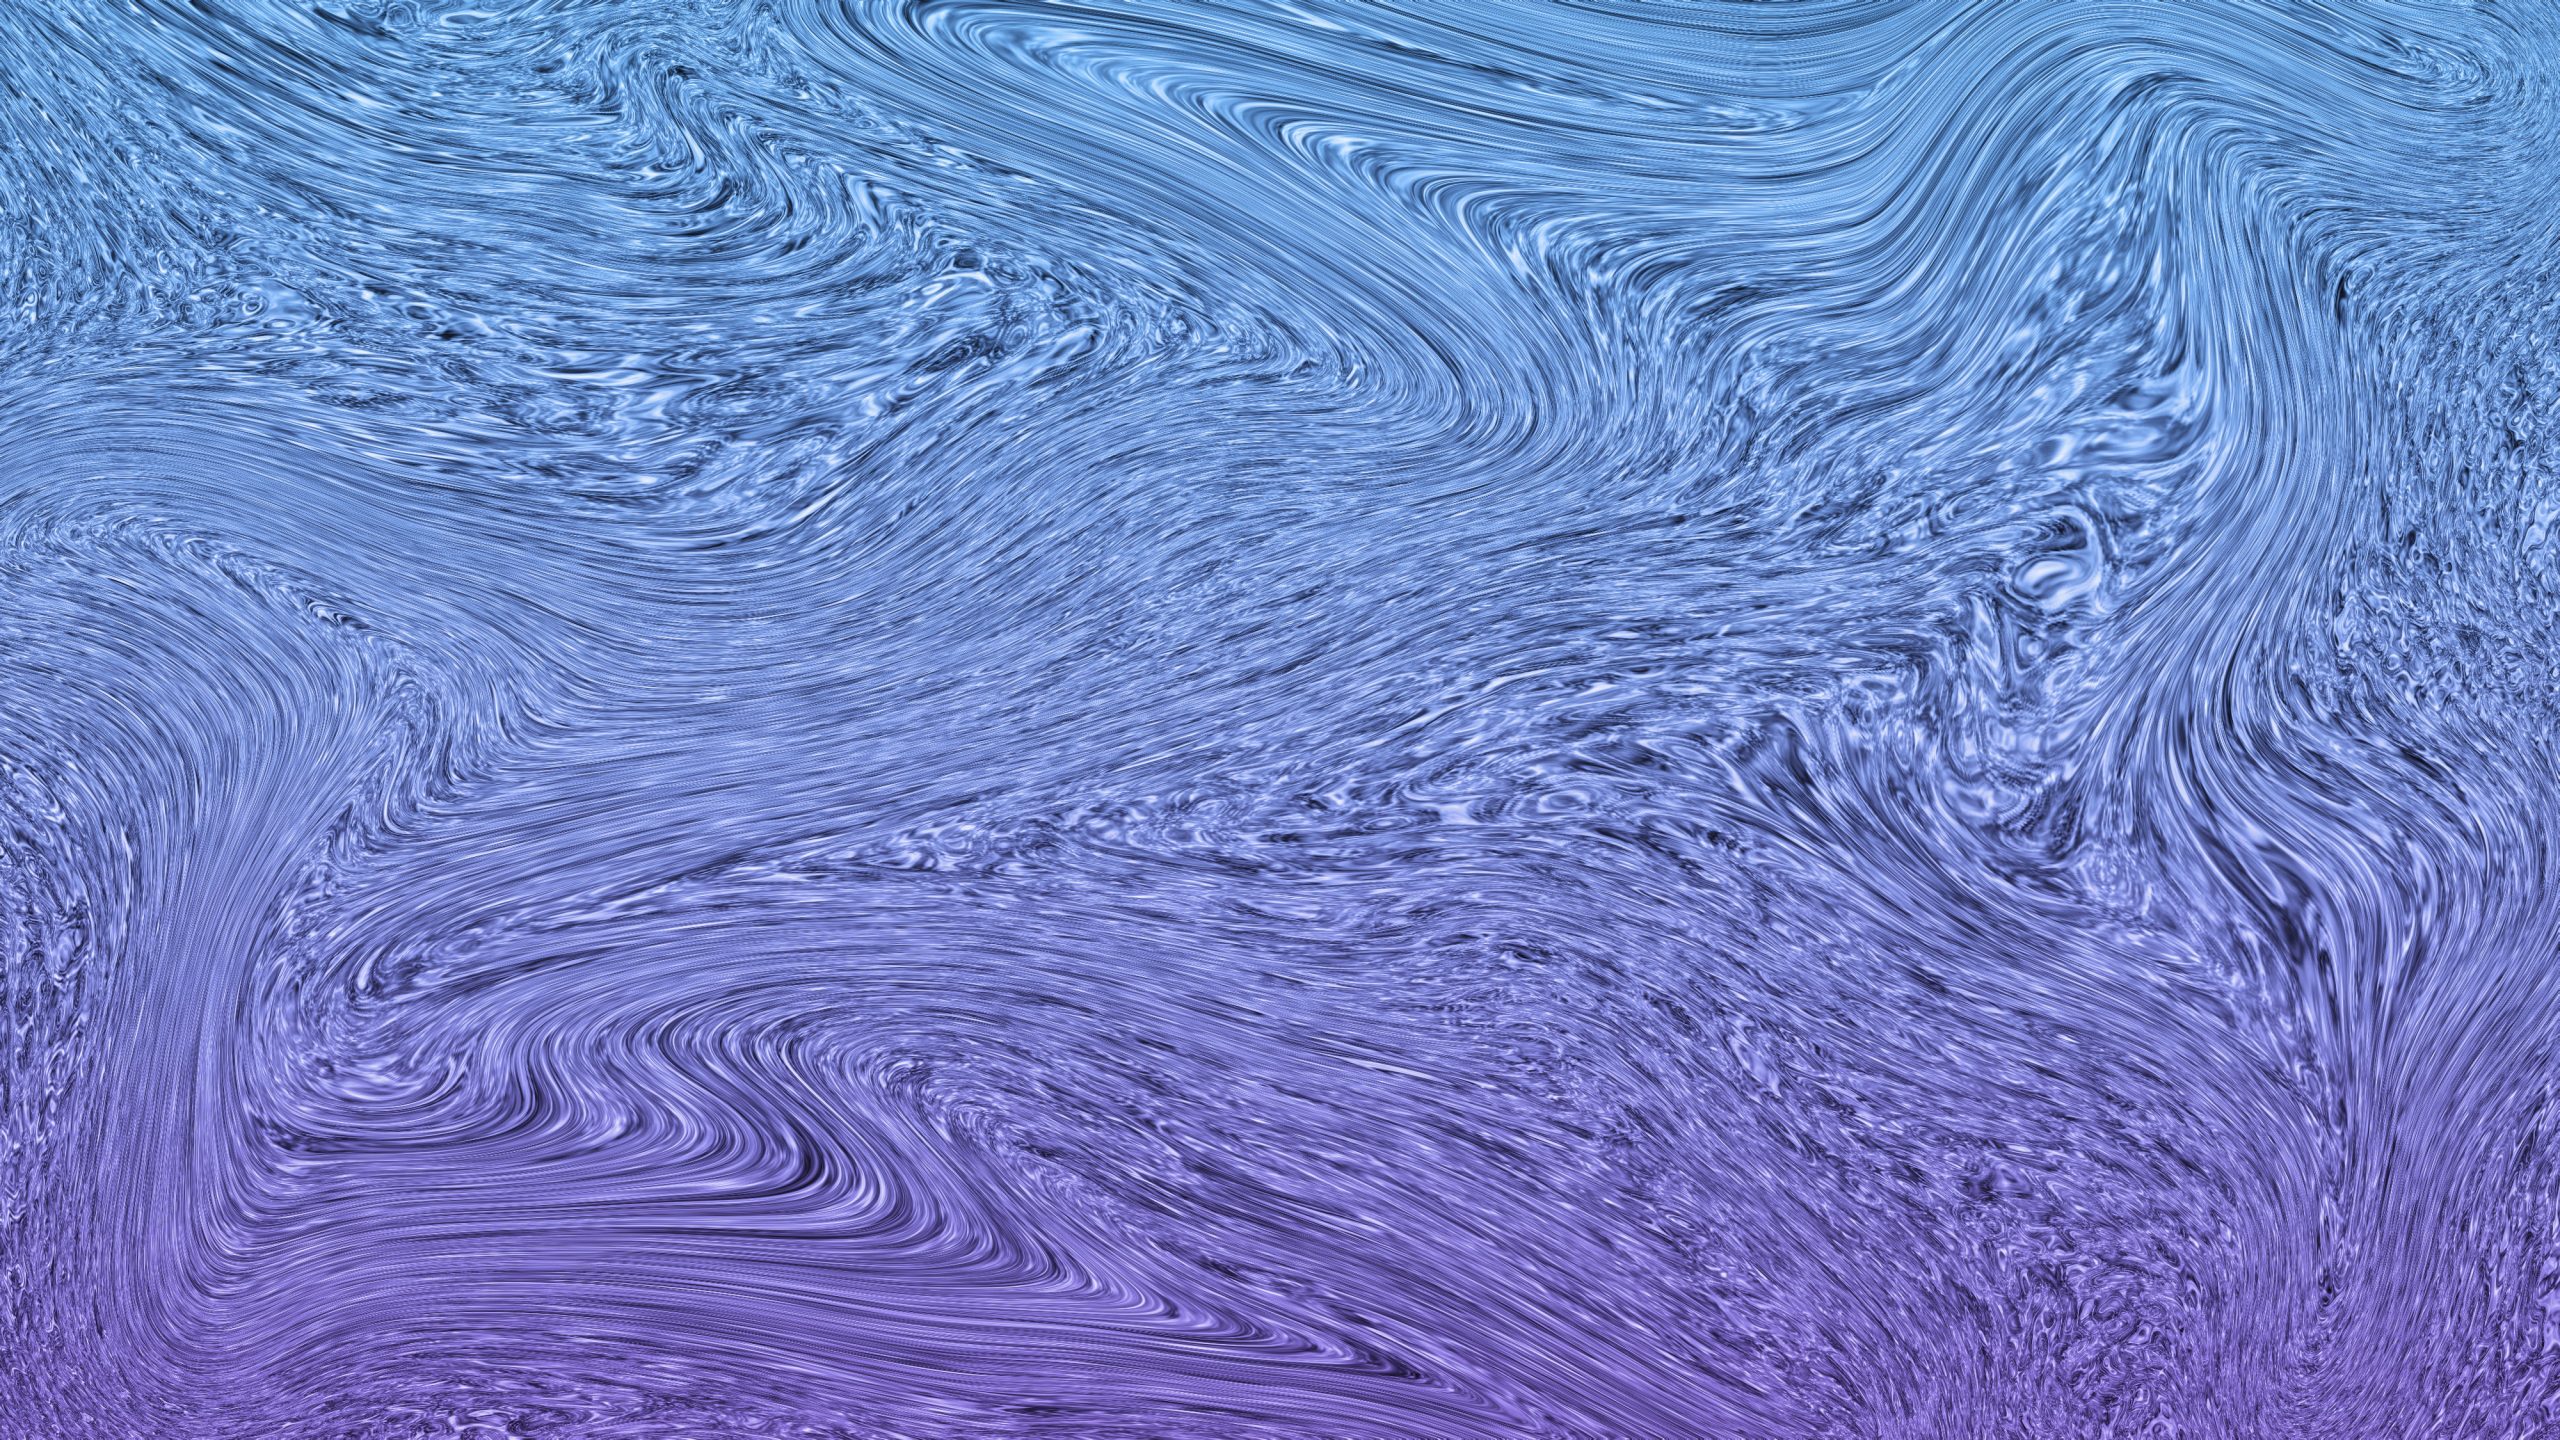 Blue fluid abstract wallpaper